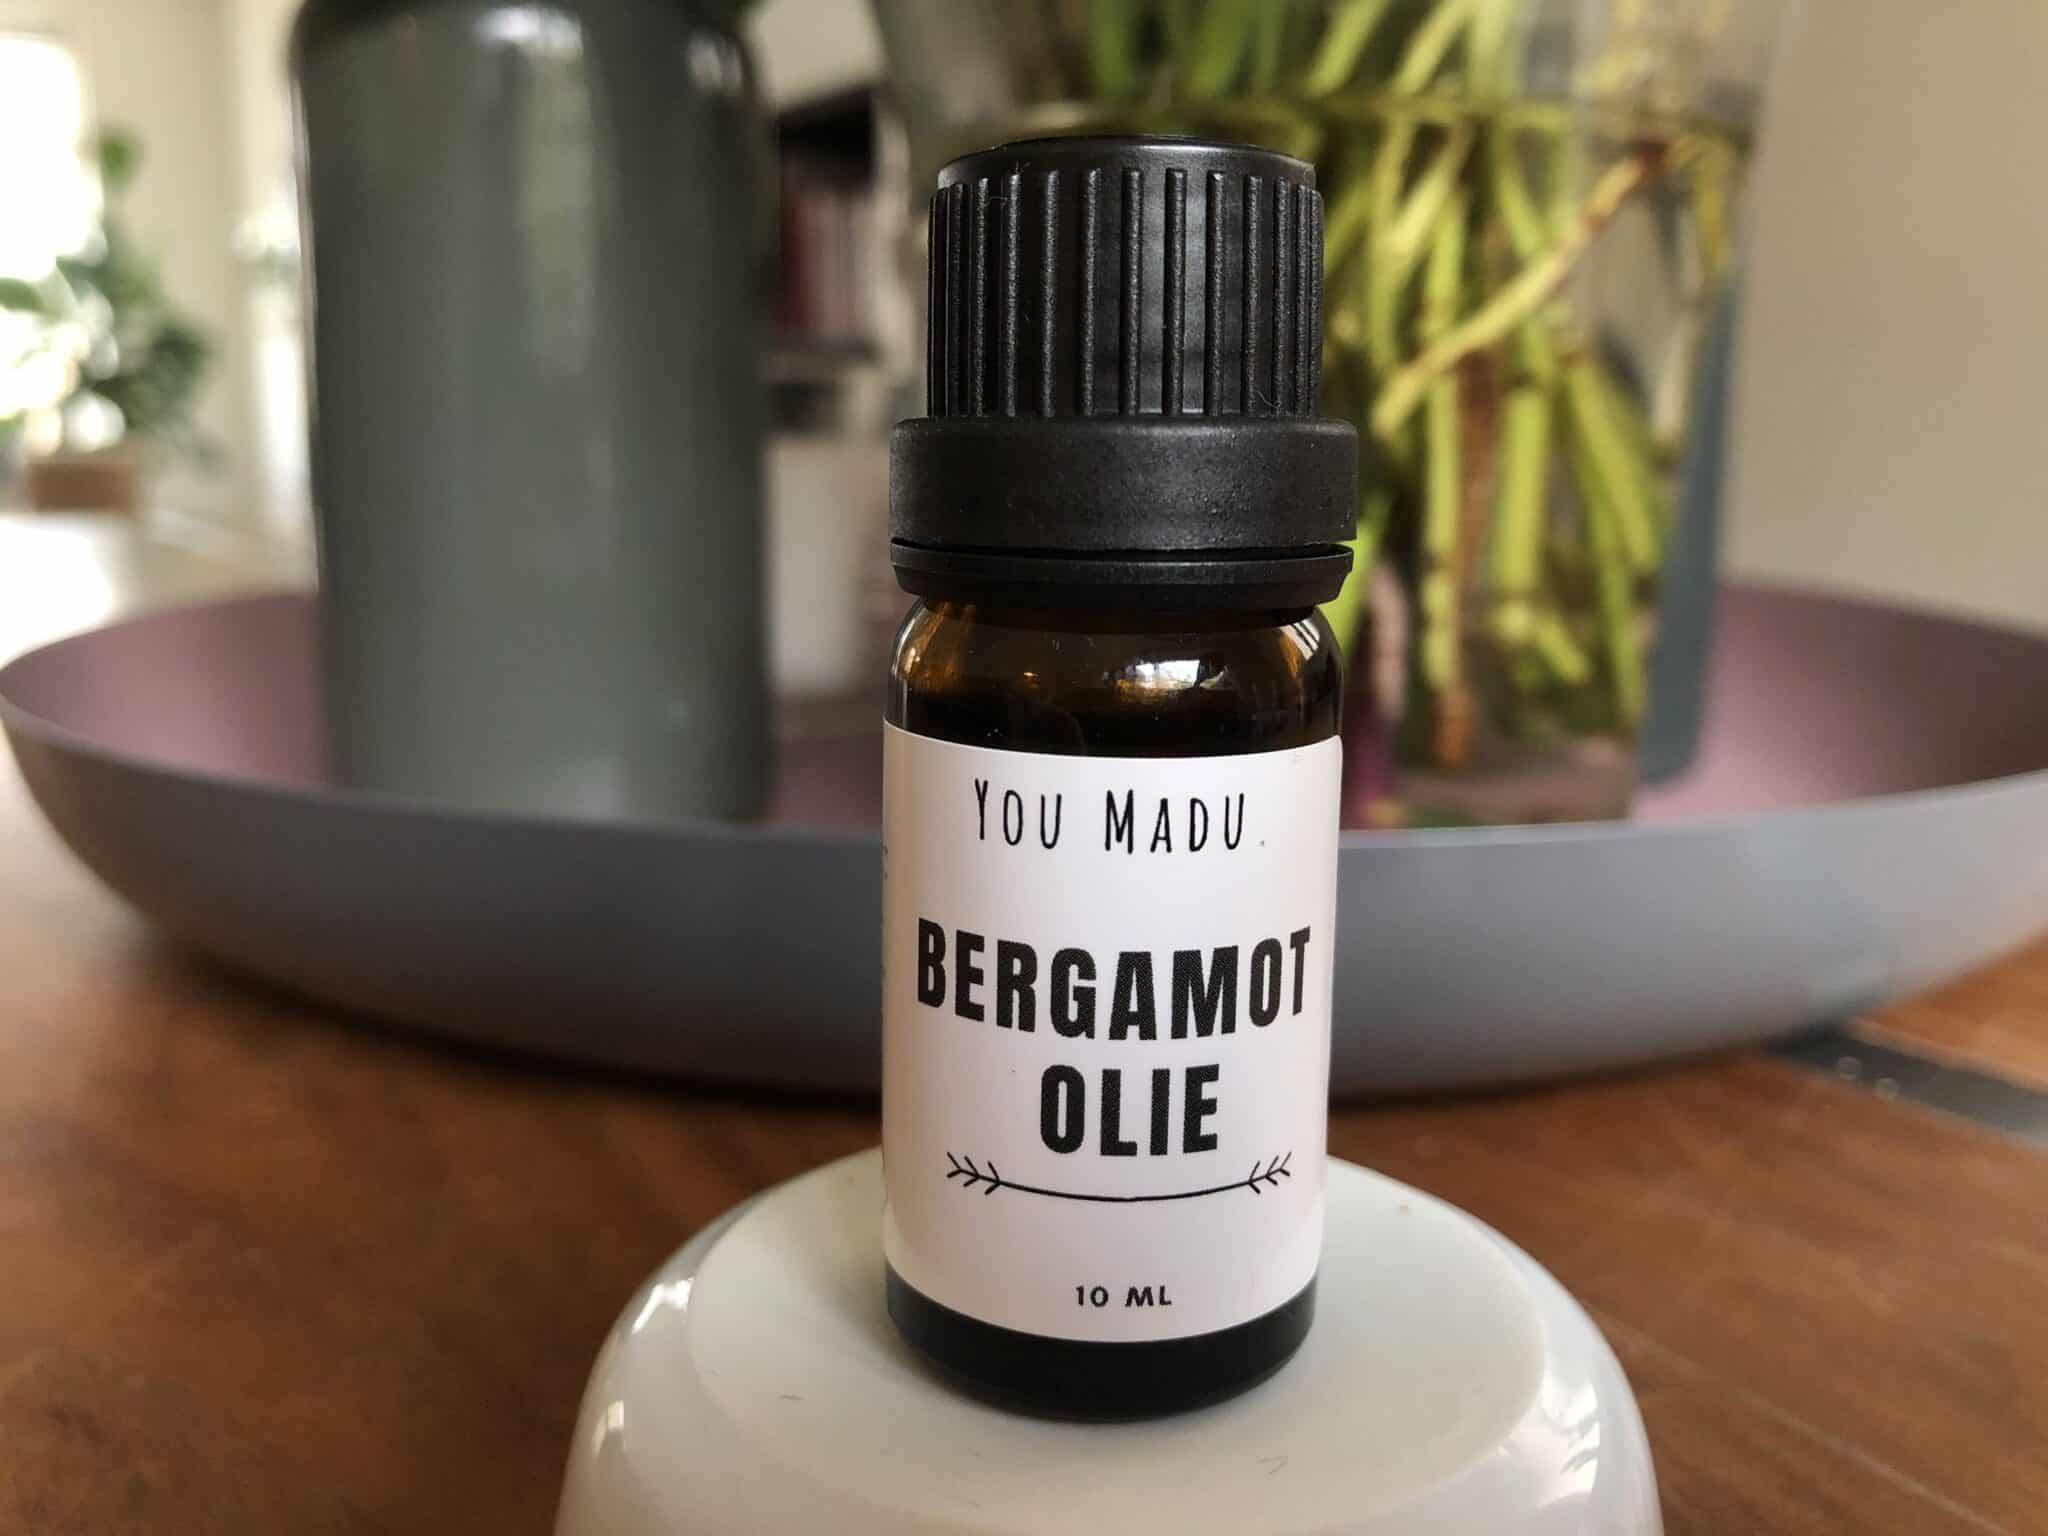 Review: Bergamot essentiële olie van You Madu